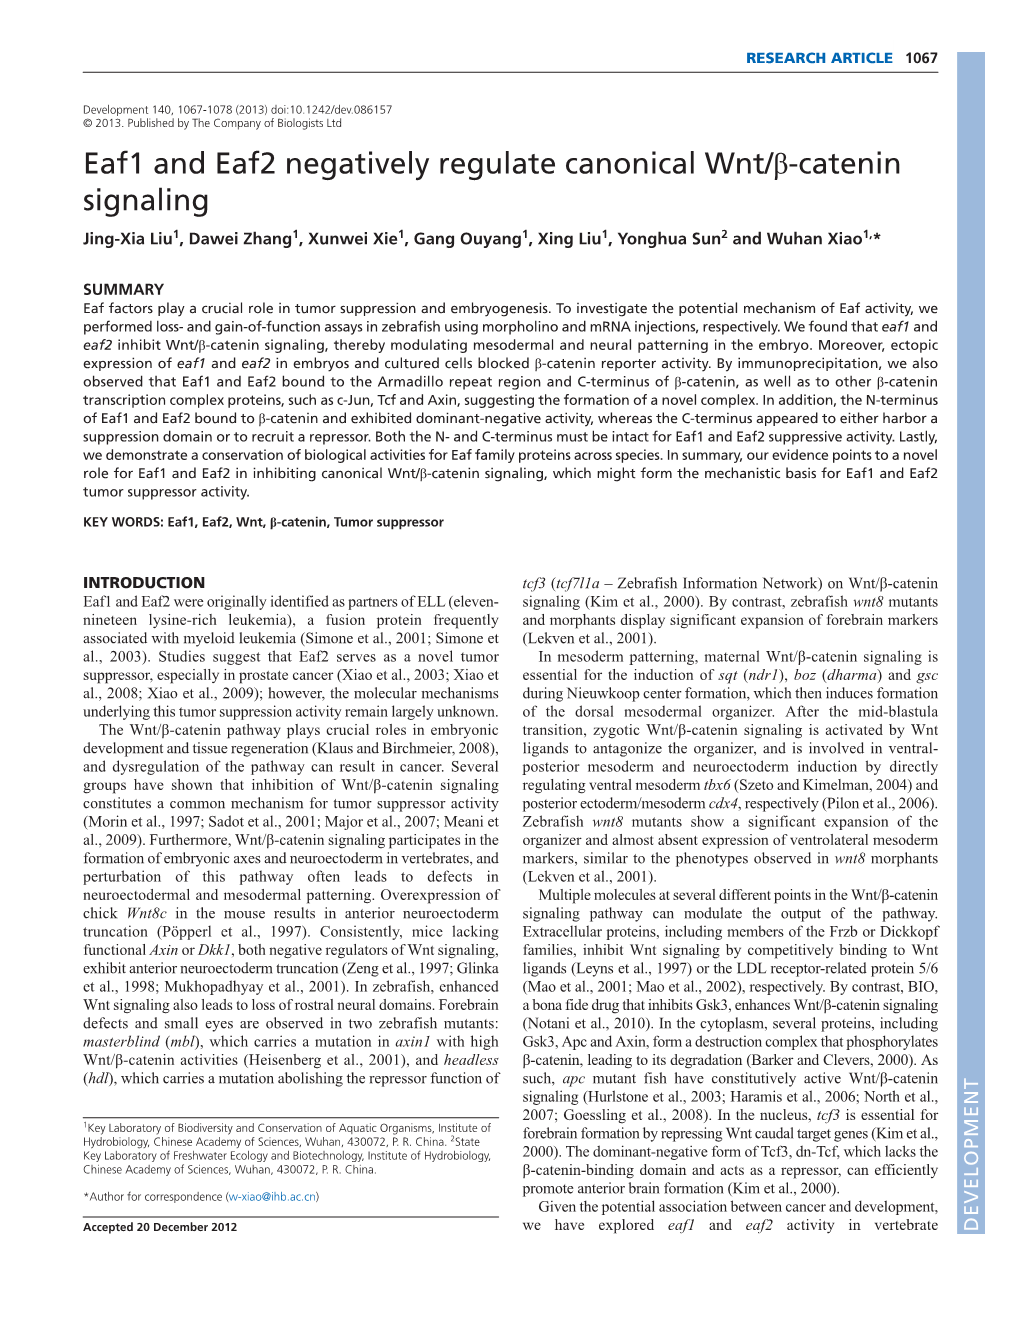 Eaf1 and Eaf2 Negatively Regulate Canonical Wnt/Β-Catenin Signaling Jing-Xia Liu1, Dawei Zhang1, Xunwei Xie1, Gang Ouyang1, Xing Liu1, Yonghua Sun2 and Wuhan Xiao1,*